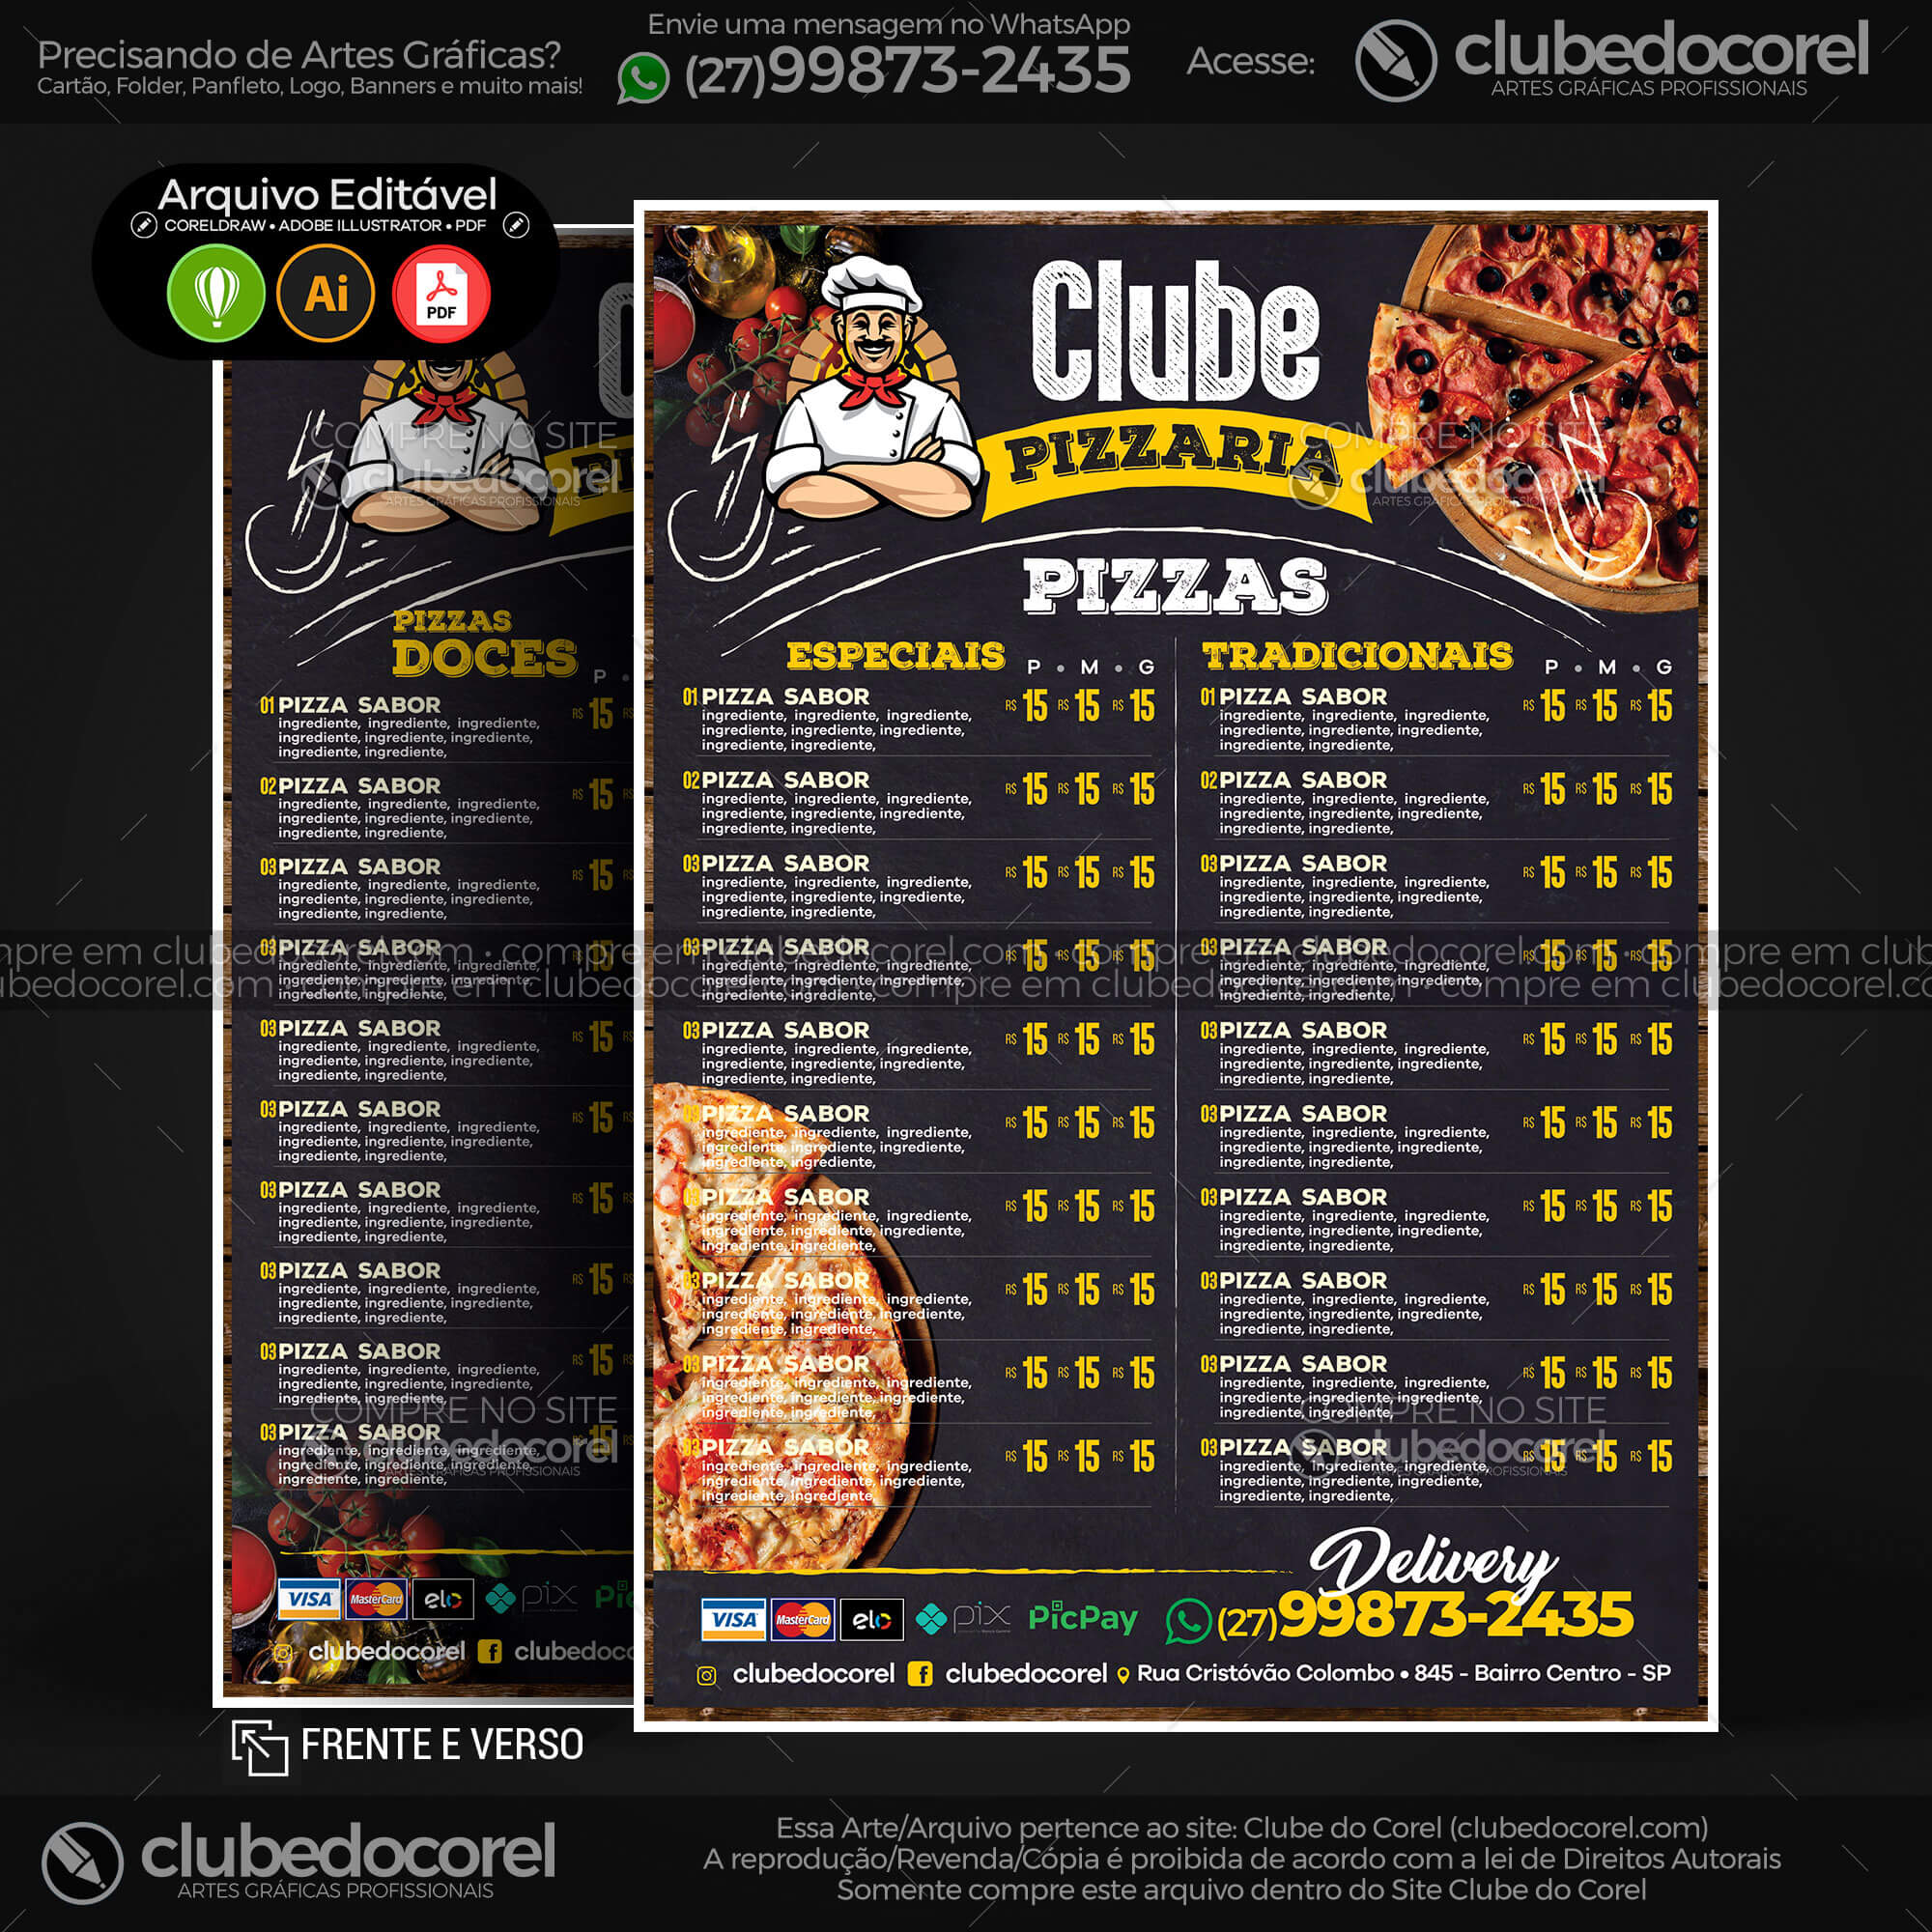 Cardápio Pizzaria - Pizza e Hamburguer (Lanche) - Modelo pronto Editável  #01 [CDR AI PDF] | Clube do Corel - cardapio de pizza